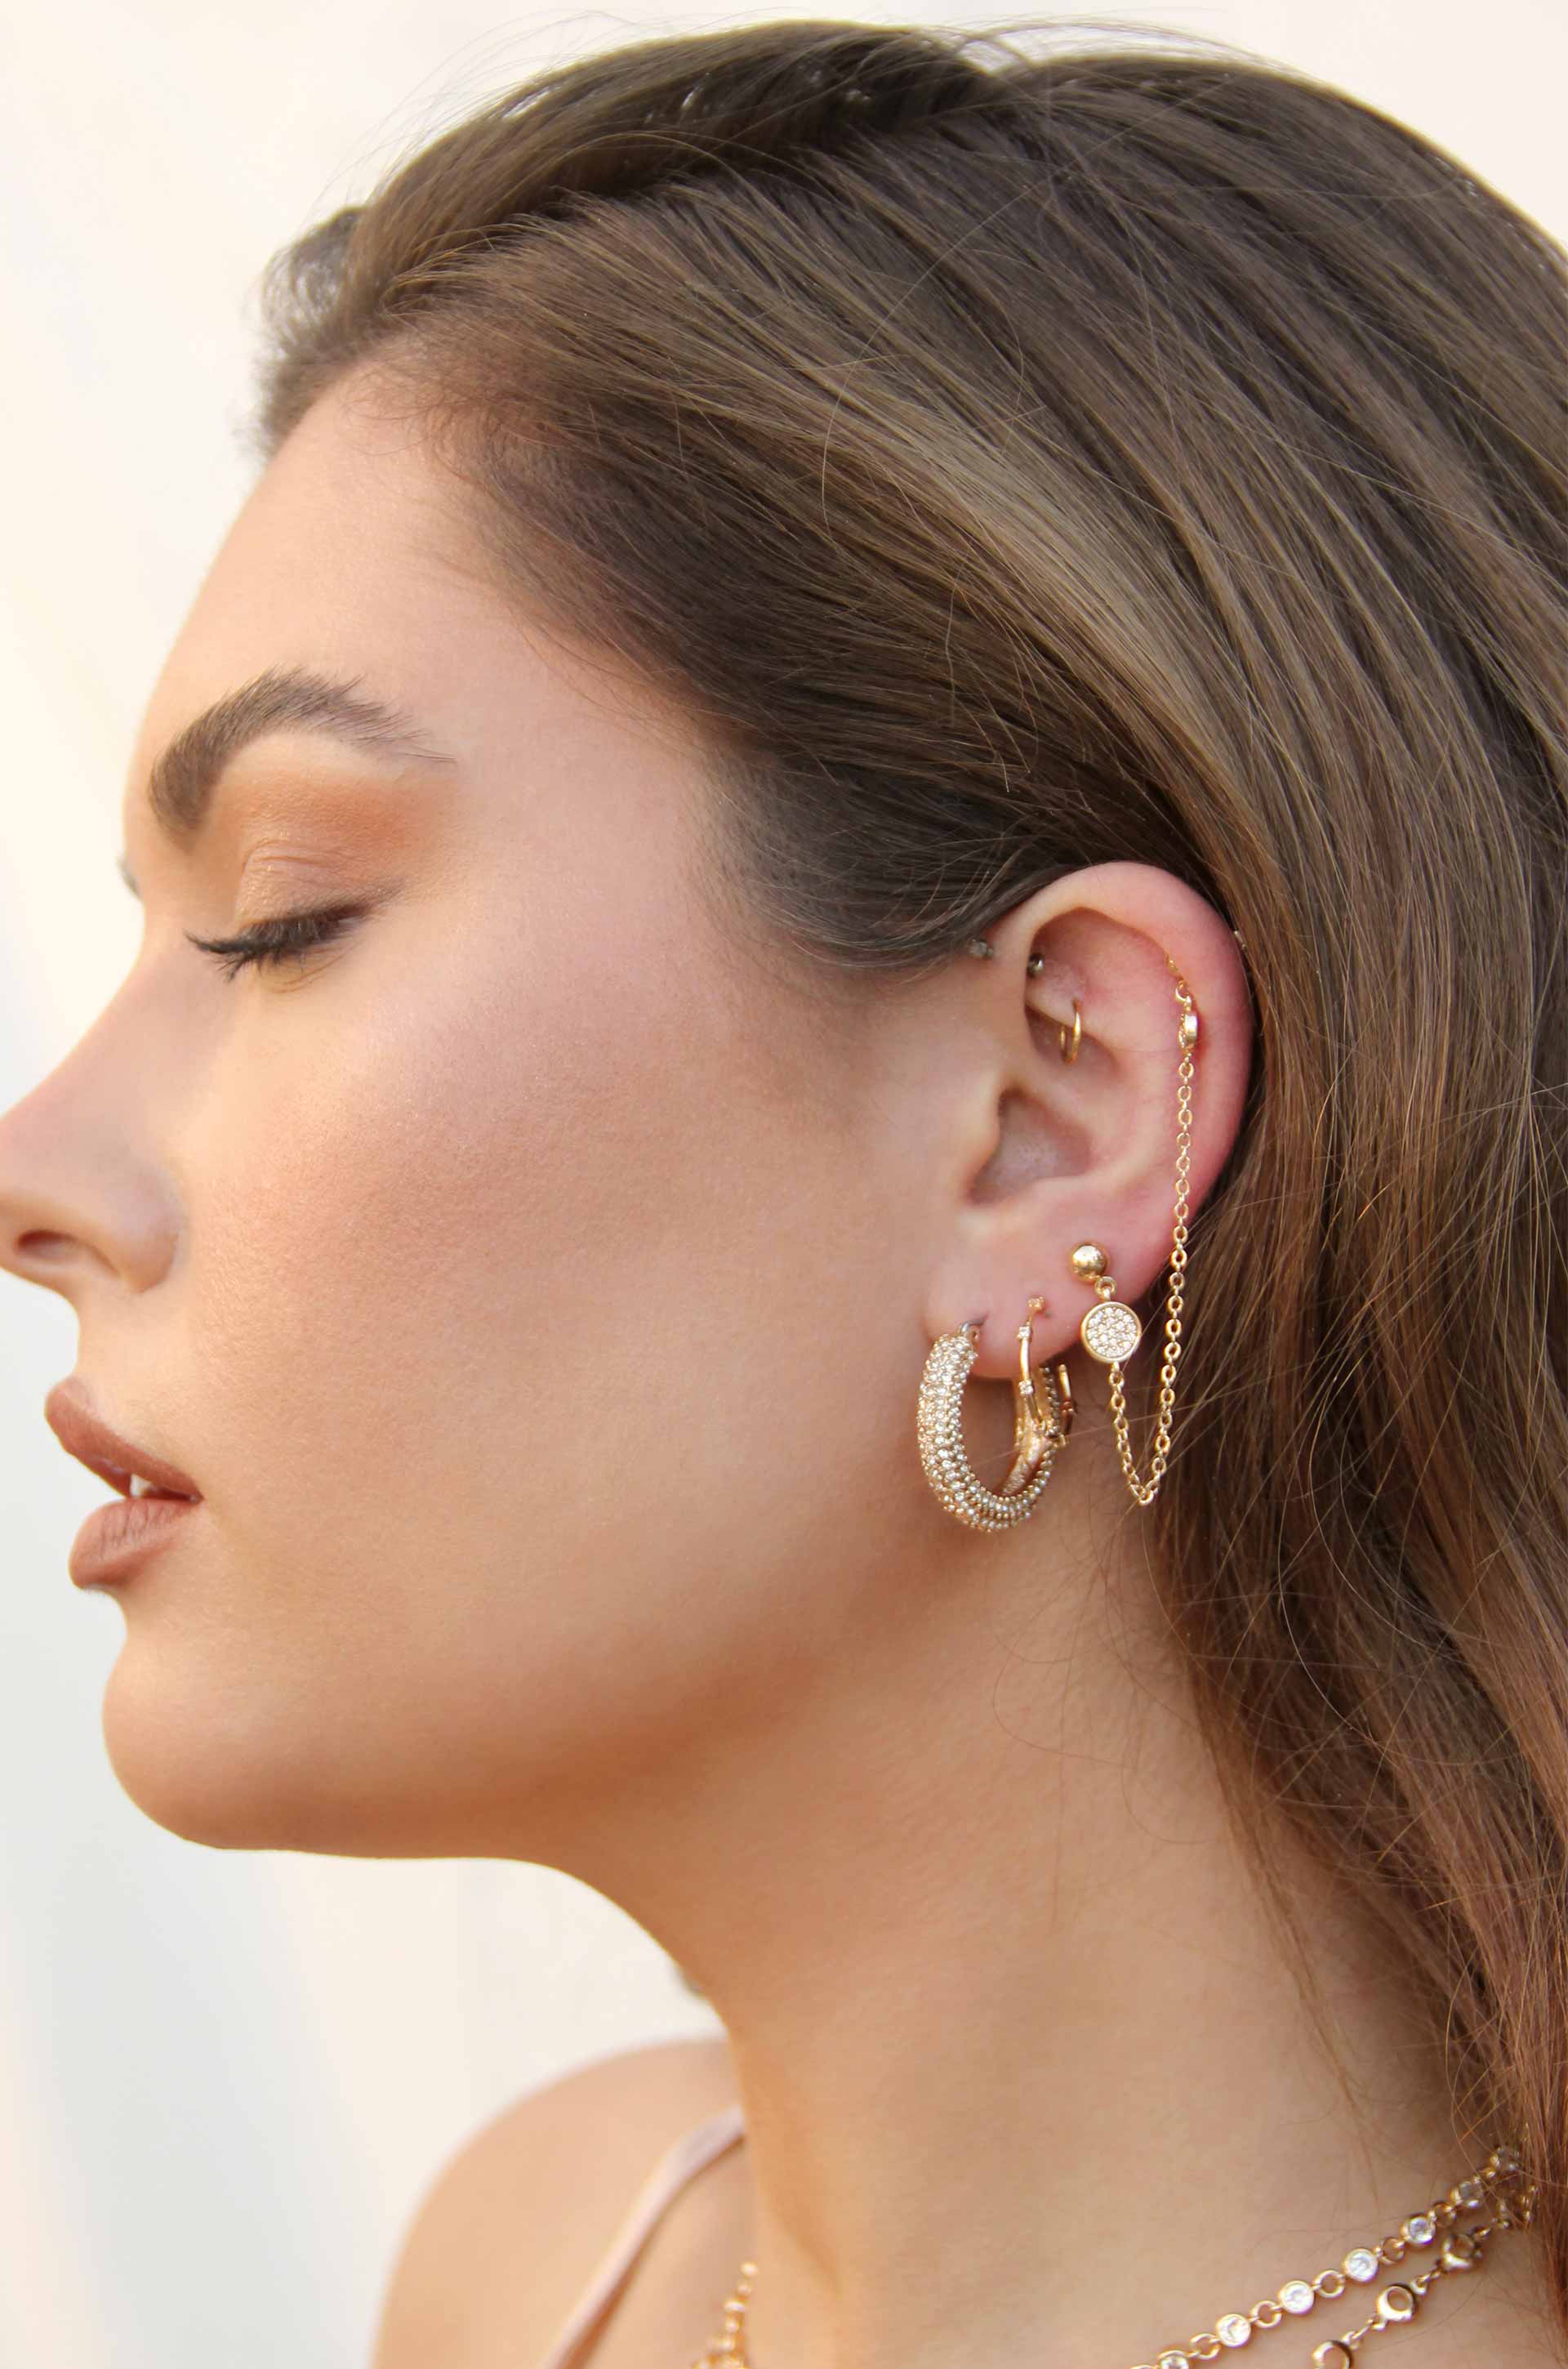 Double Piercing Earrings Chain Hoop Earrings Three Dot Earrings Chain Gold  Earrings Dangle Drop Earrings Nickle Free Chain - Etsy